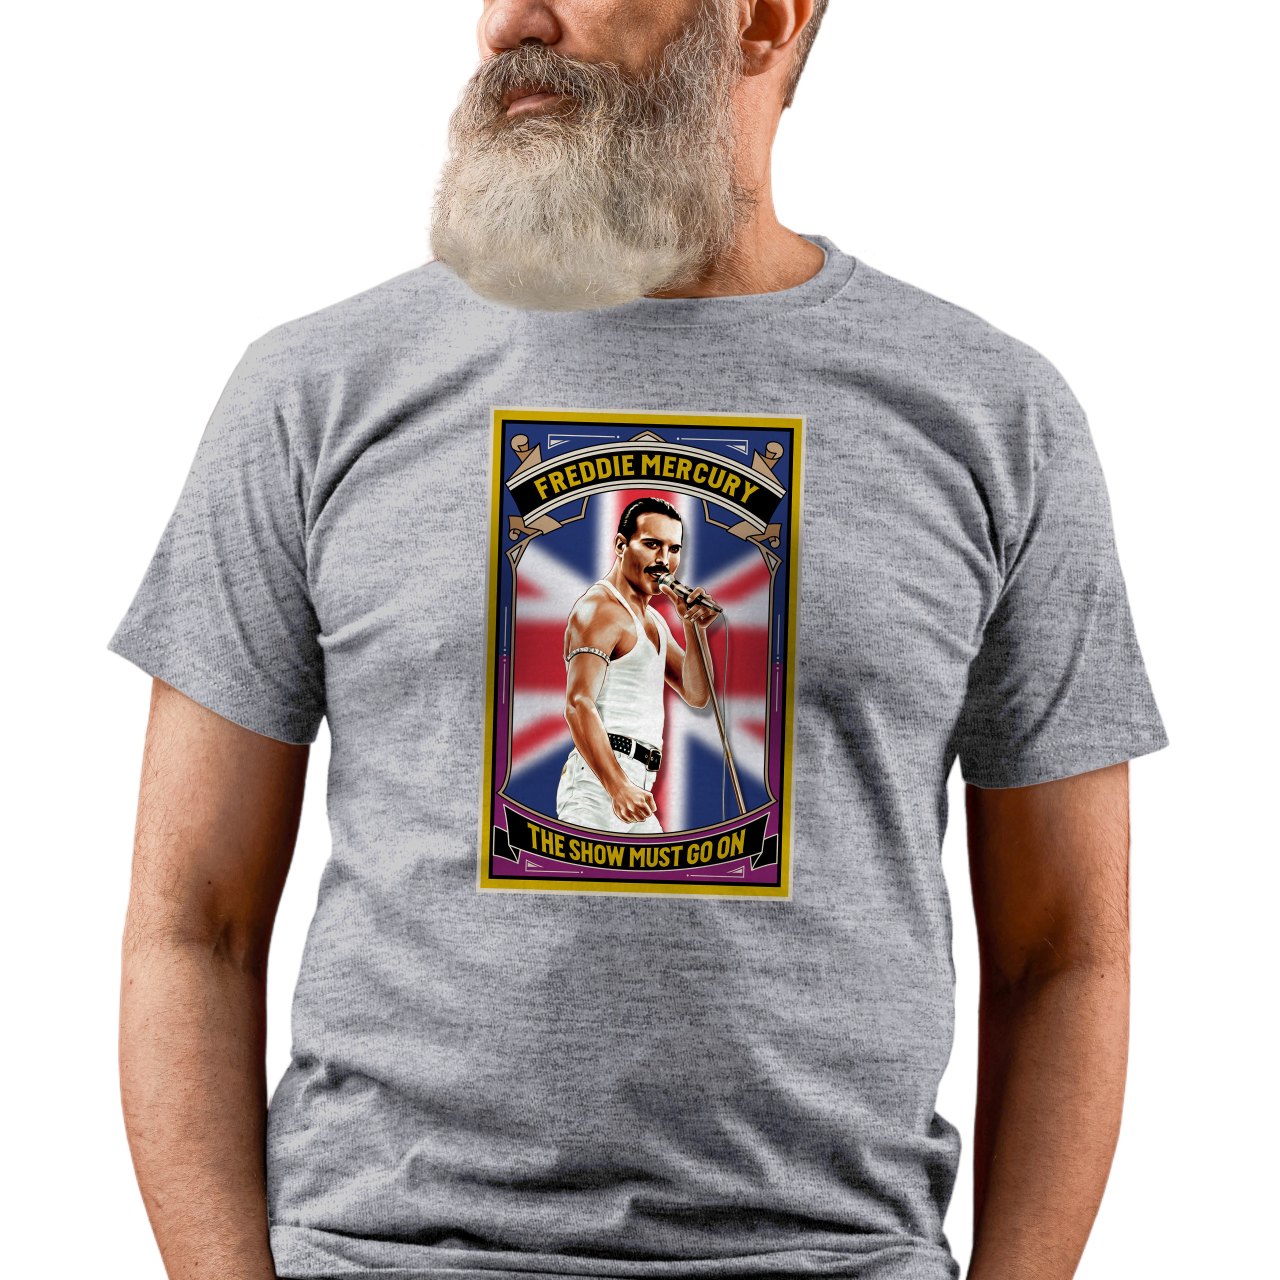 Pánské tričko s potiskem “Freddie Mercury”